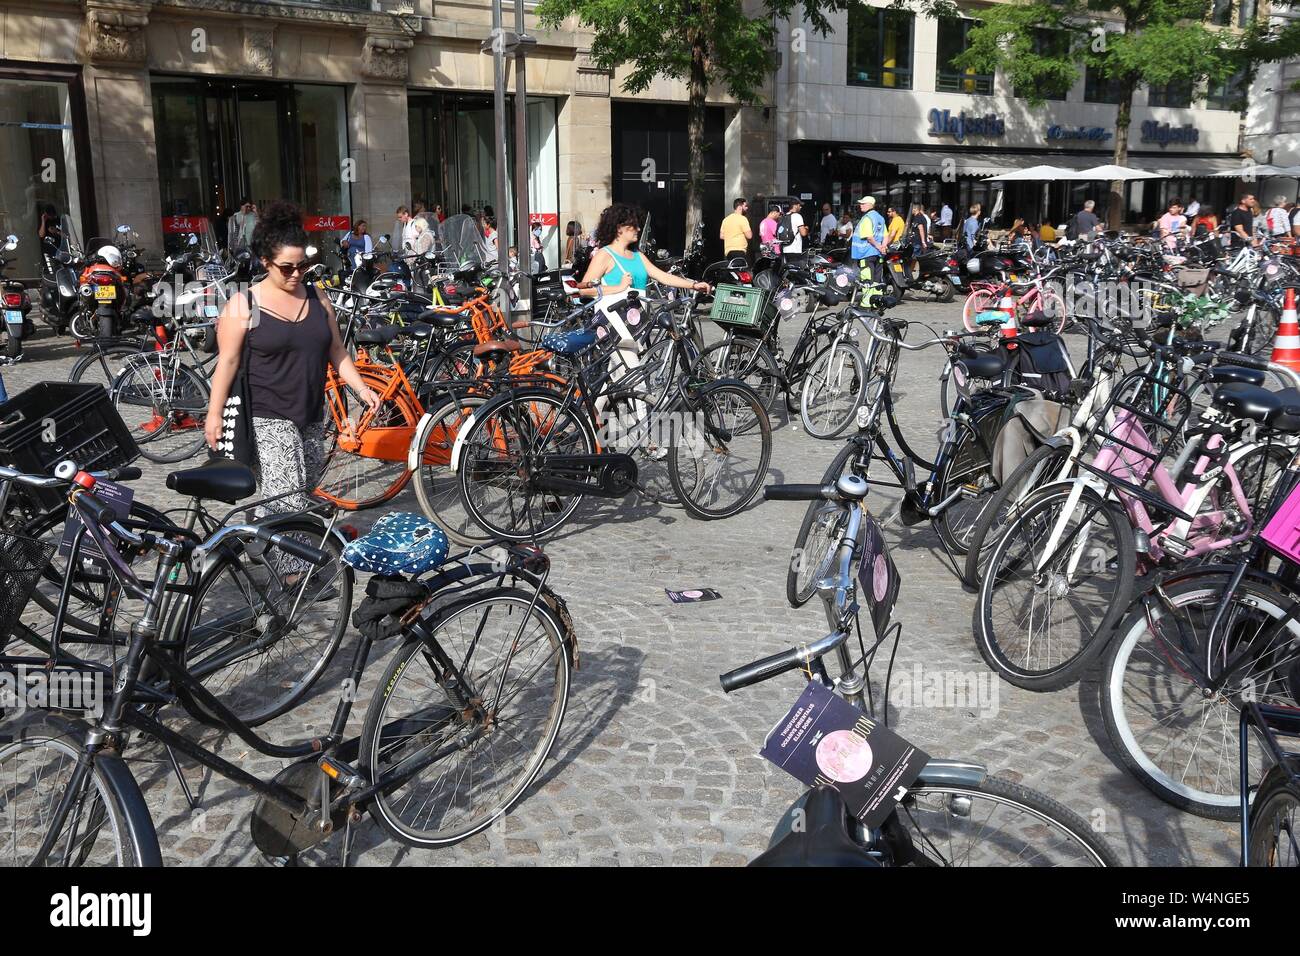 AMSTERDAM, Holanda - Julio 9, 2017: la gente camina a través de aparcamiento de bicicletas en la Plaza Dam en Amsterdam, Países Bajos. Ámsterdam es la ciudad capital de T Foto de stock